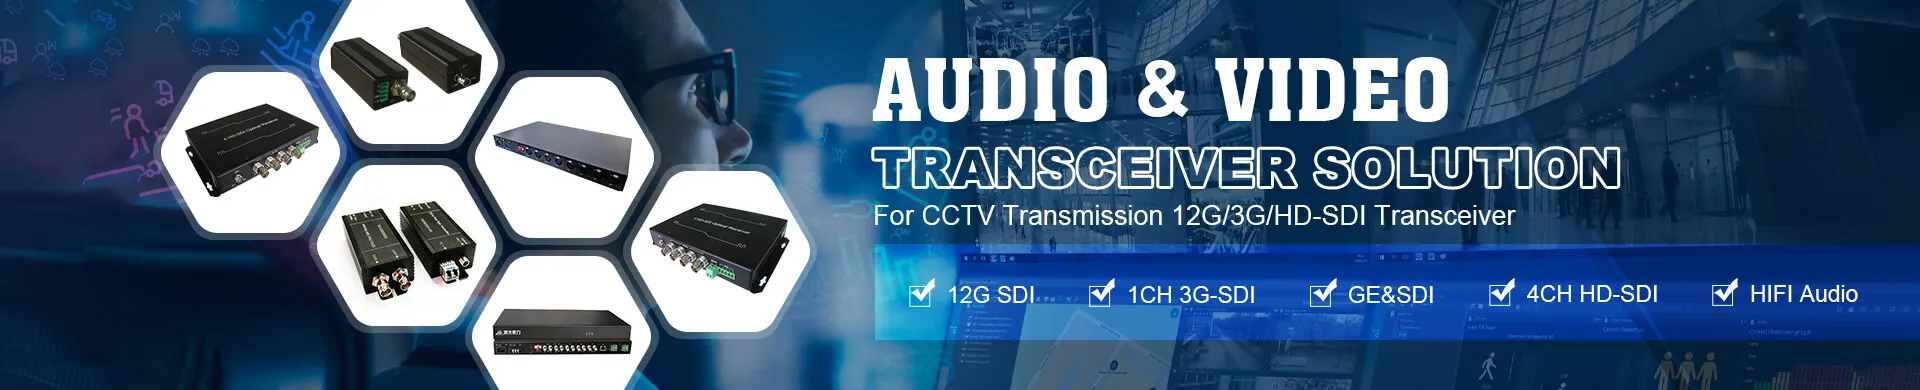 Audio & Video Transceiver